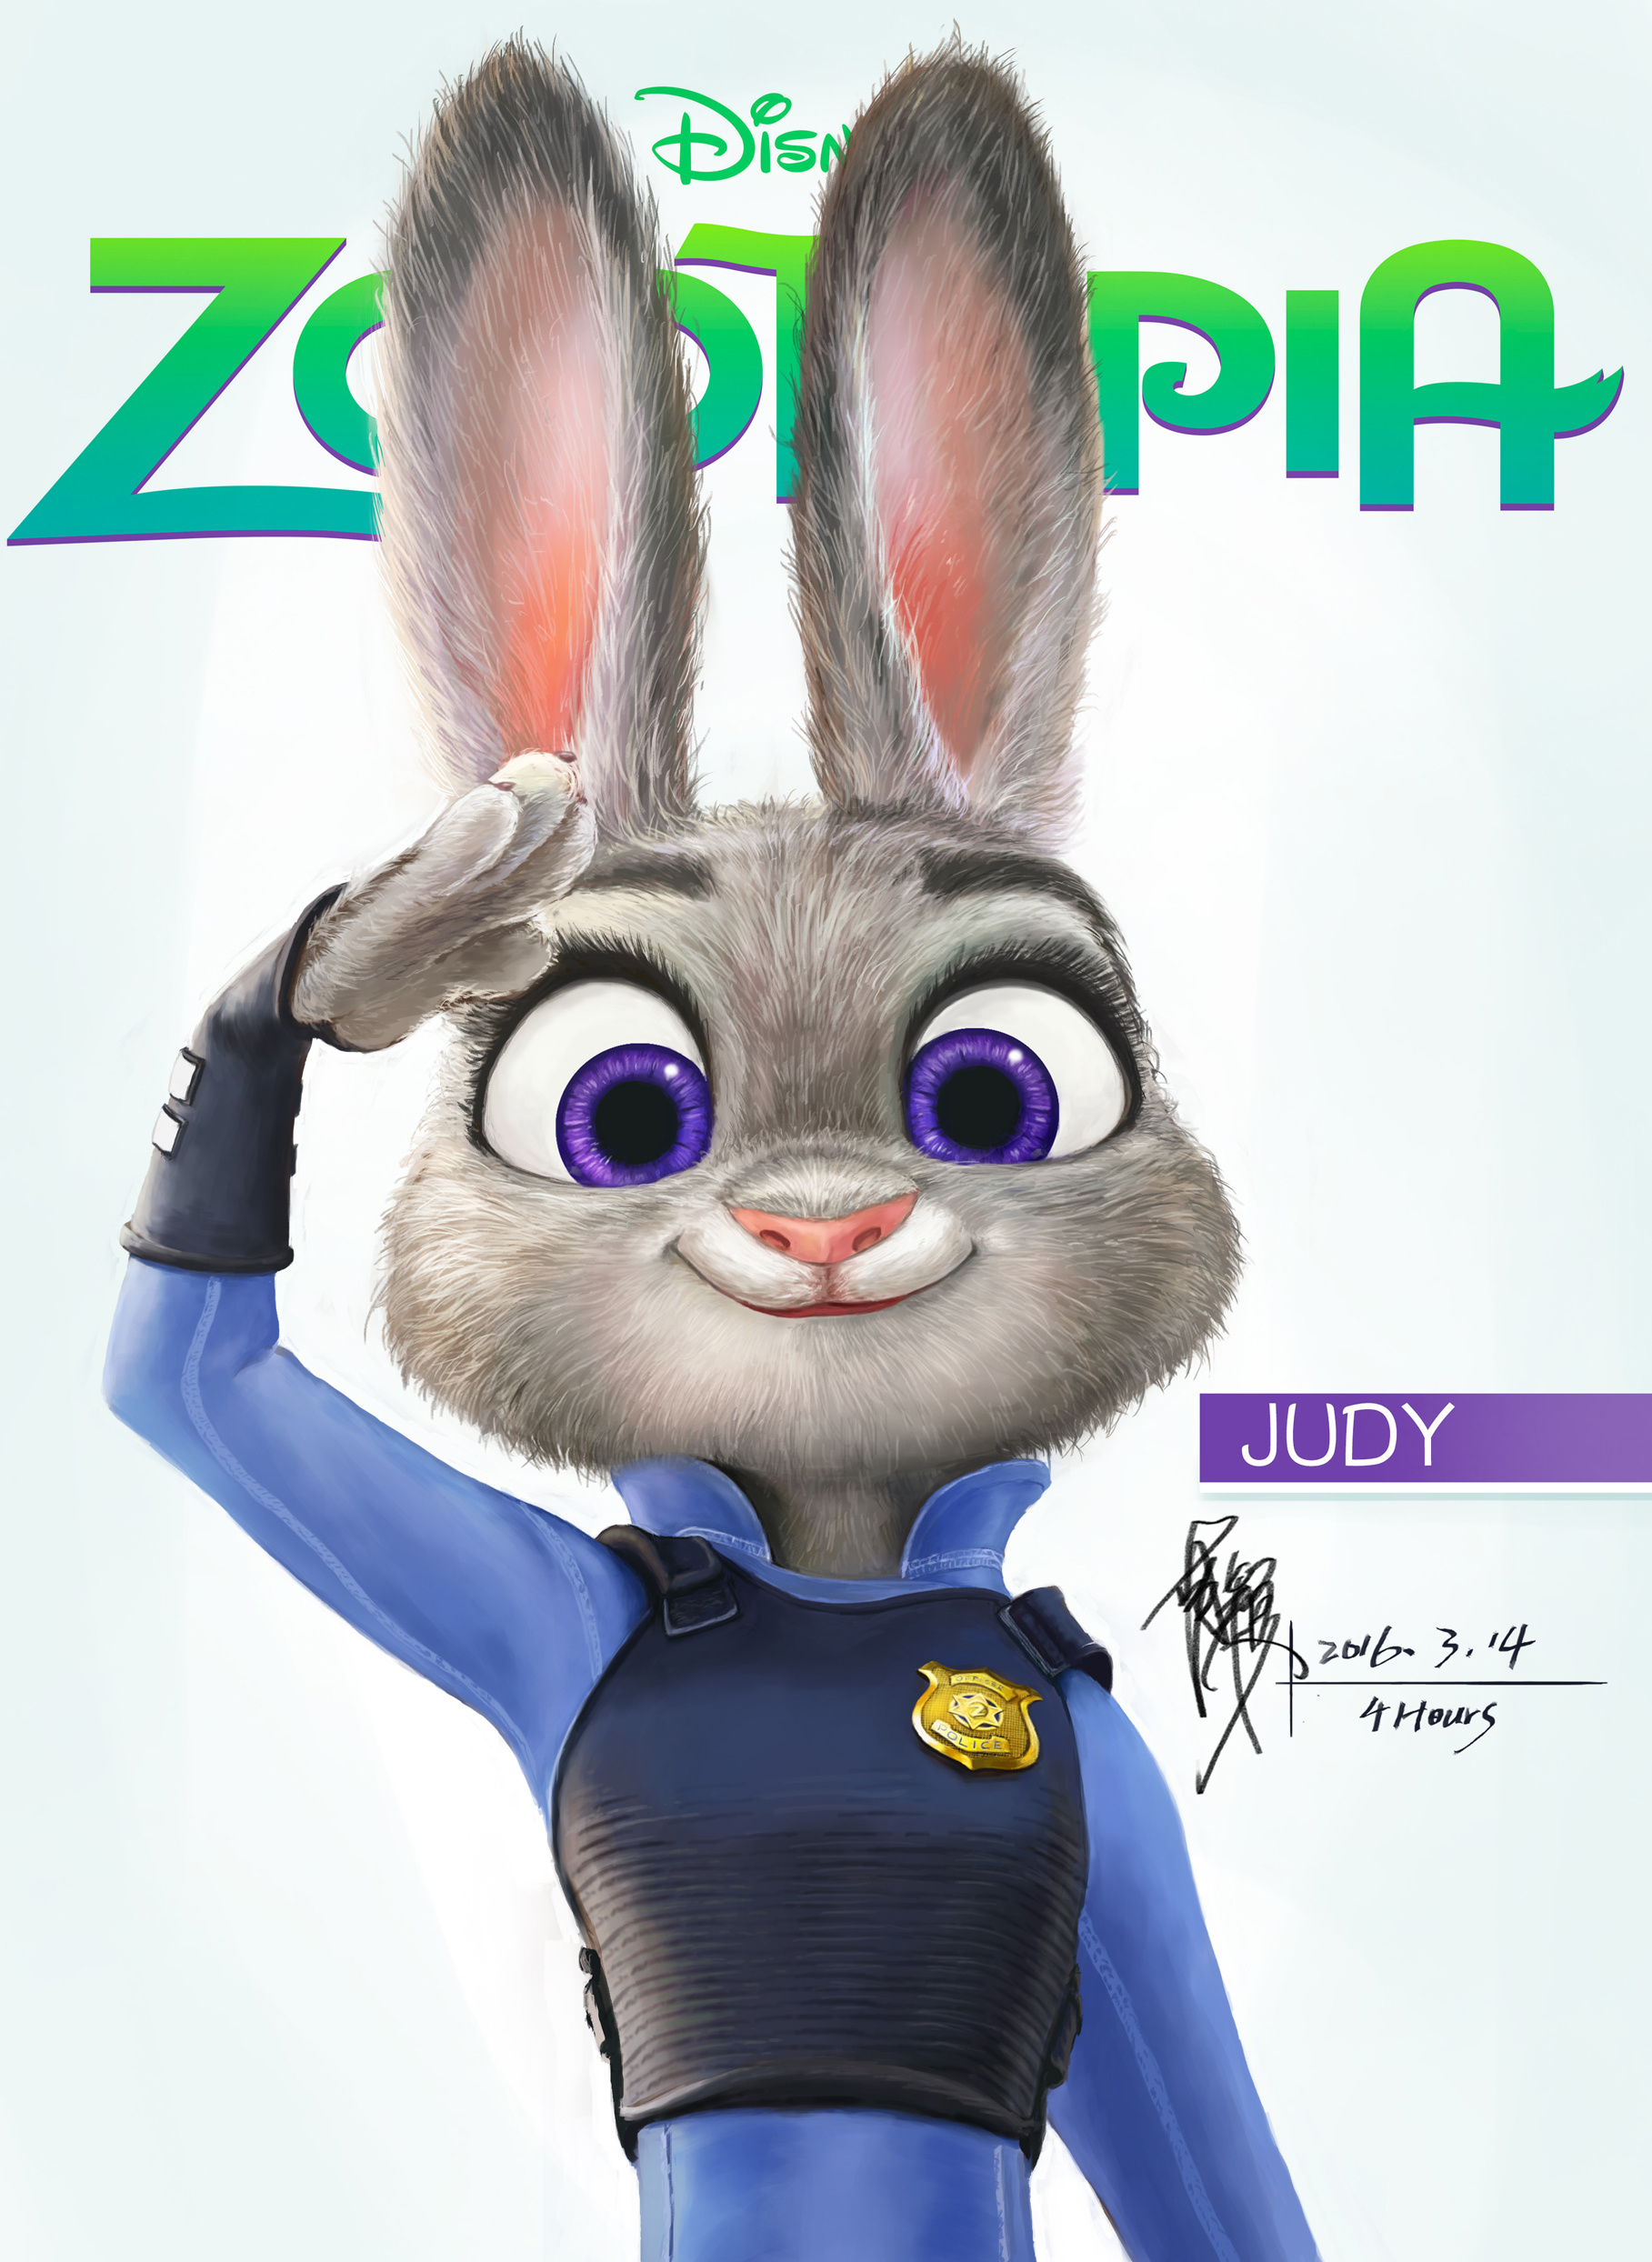 Judy Hopps - Disney's Zootopia Photo (38994556) - Fanpop